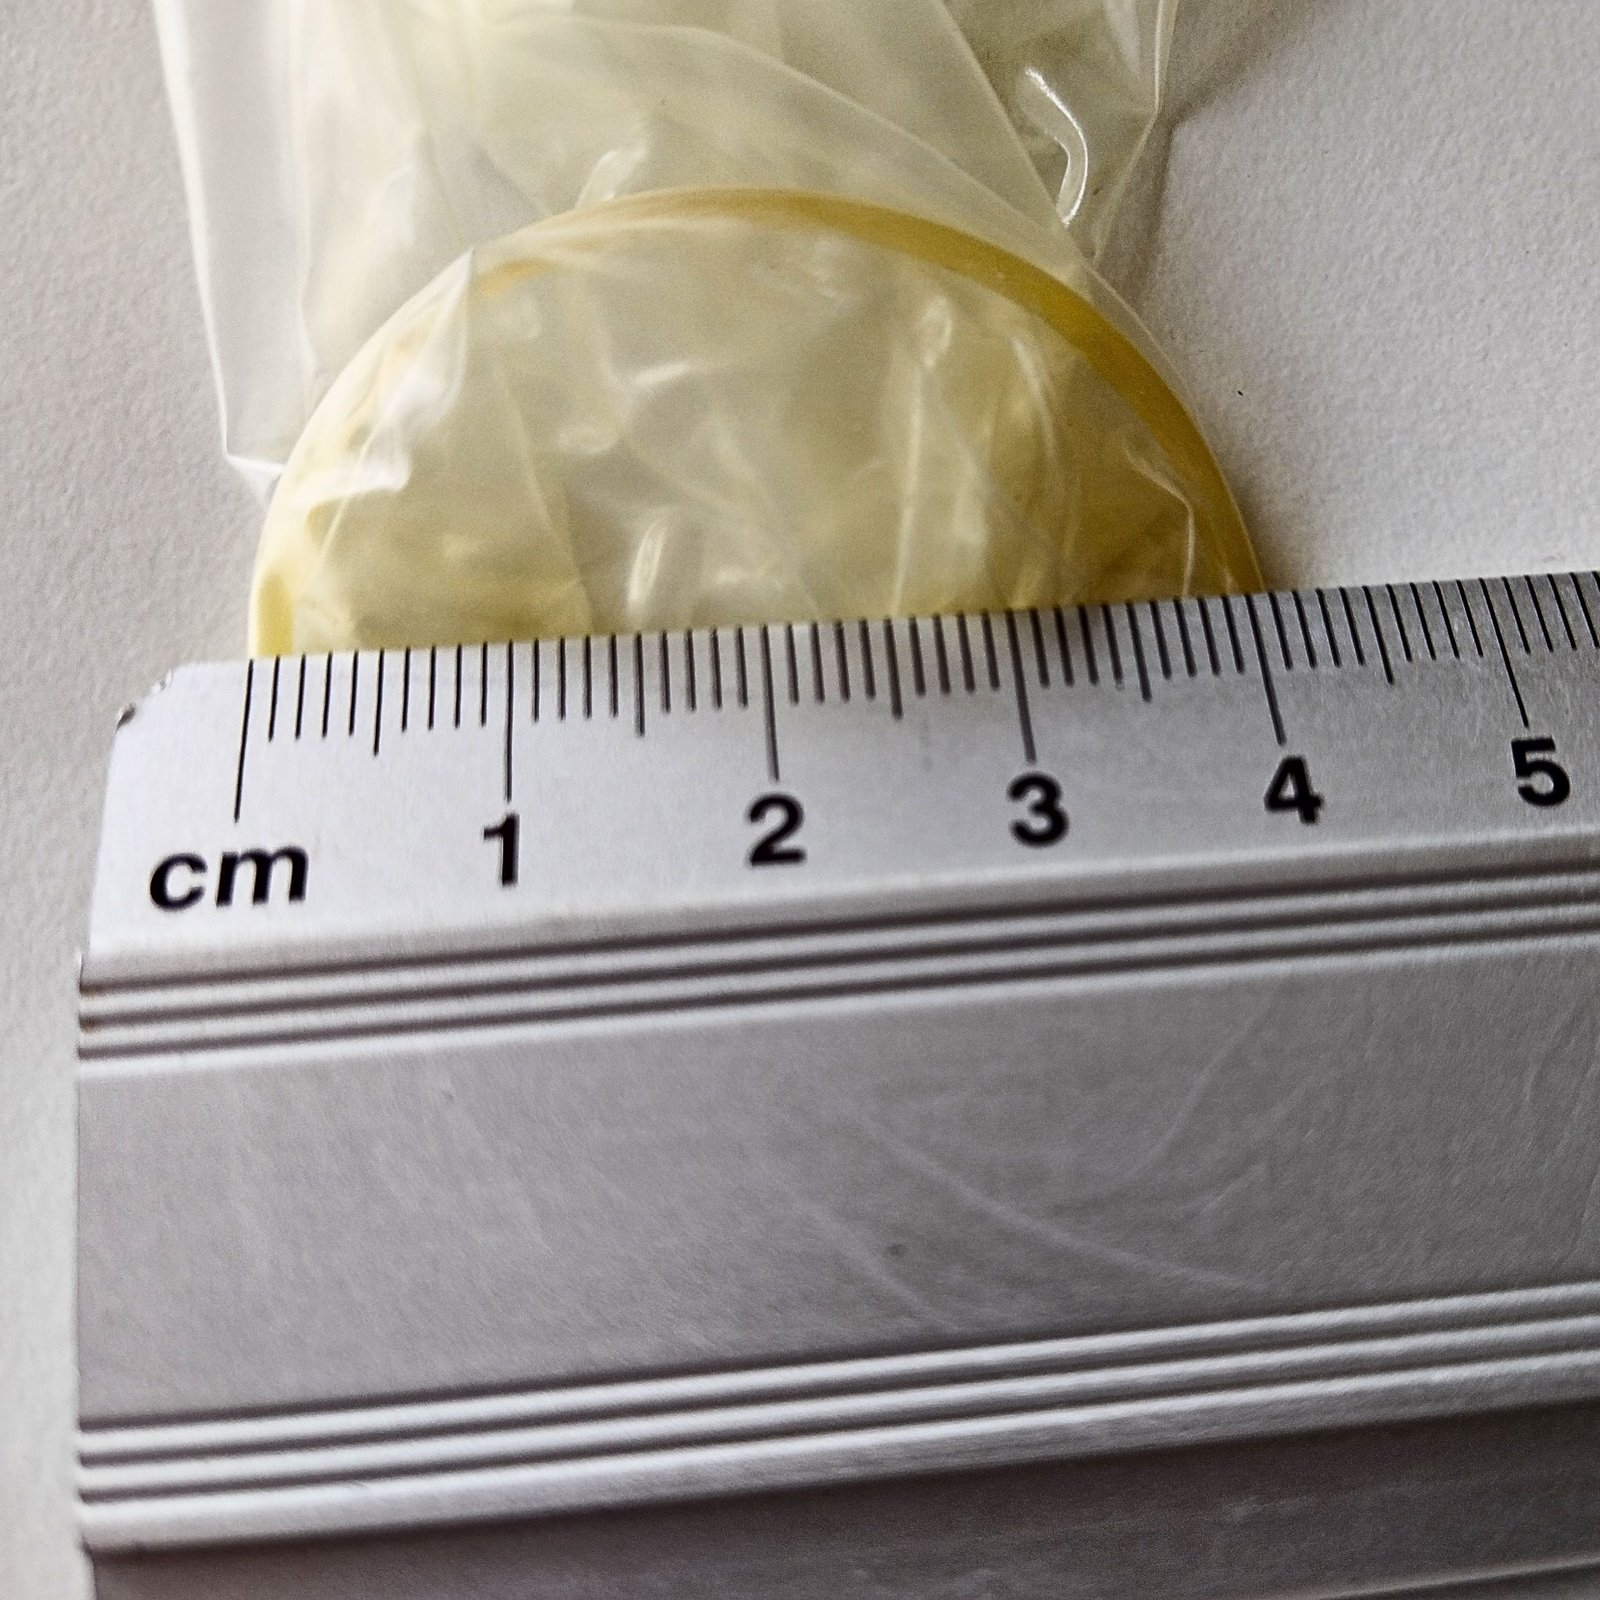 Måle diameteren på et kondom